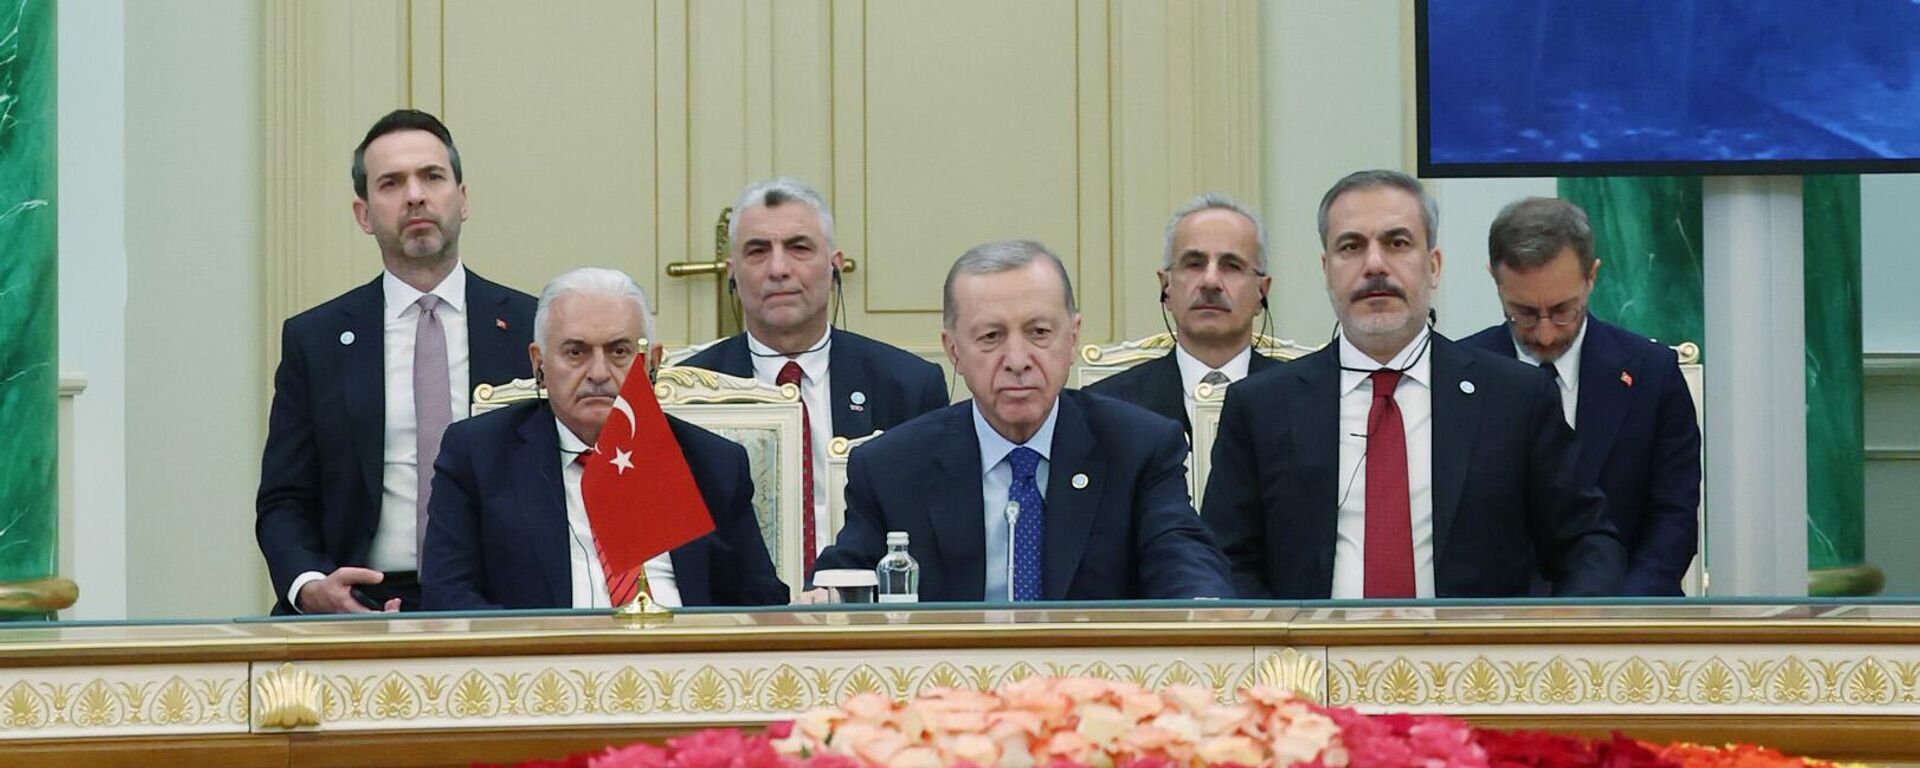 Cumhurbaşkanı Erdoğan, Akorda Cumhurbaşkanlığı Sarayı'nda Türk Devri temasıyla düzenlenen Türk Devletleri Teşkilatı (TDT) Devlet Başkanları Konseyi 10. Zirvesi'nde konuştu. - Sputnik Türkiye, 1920, 13.11.2023